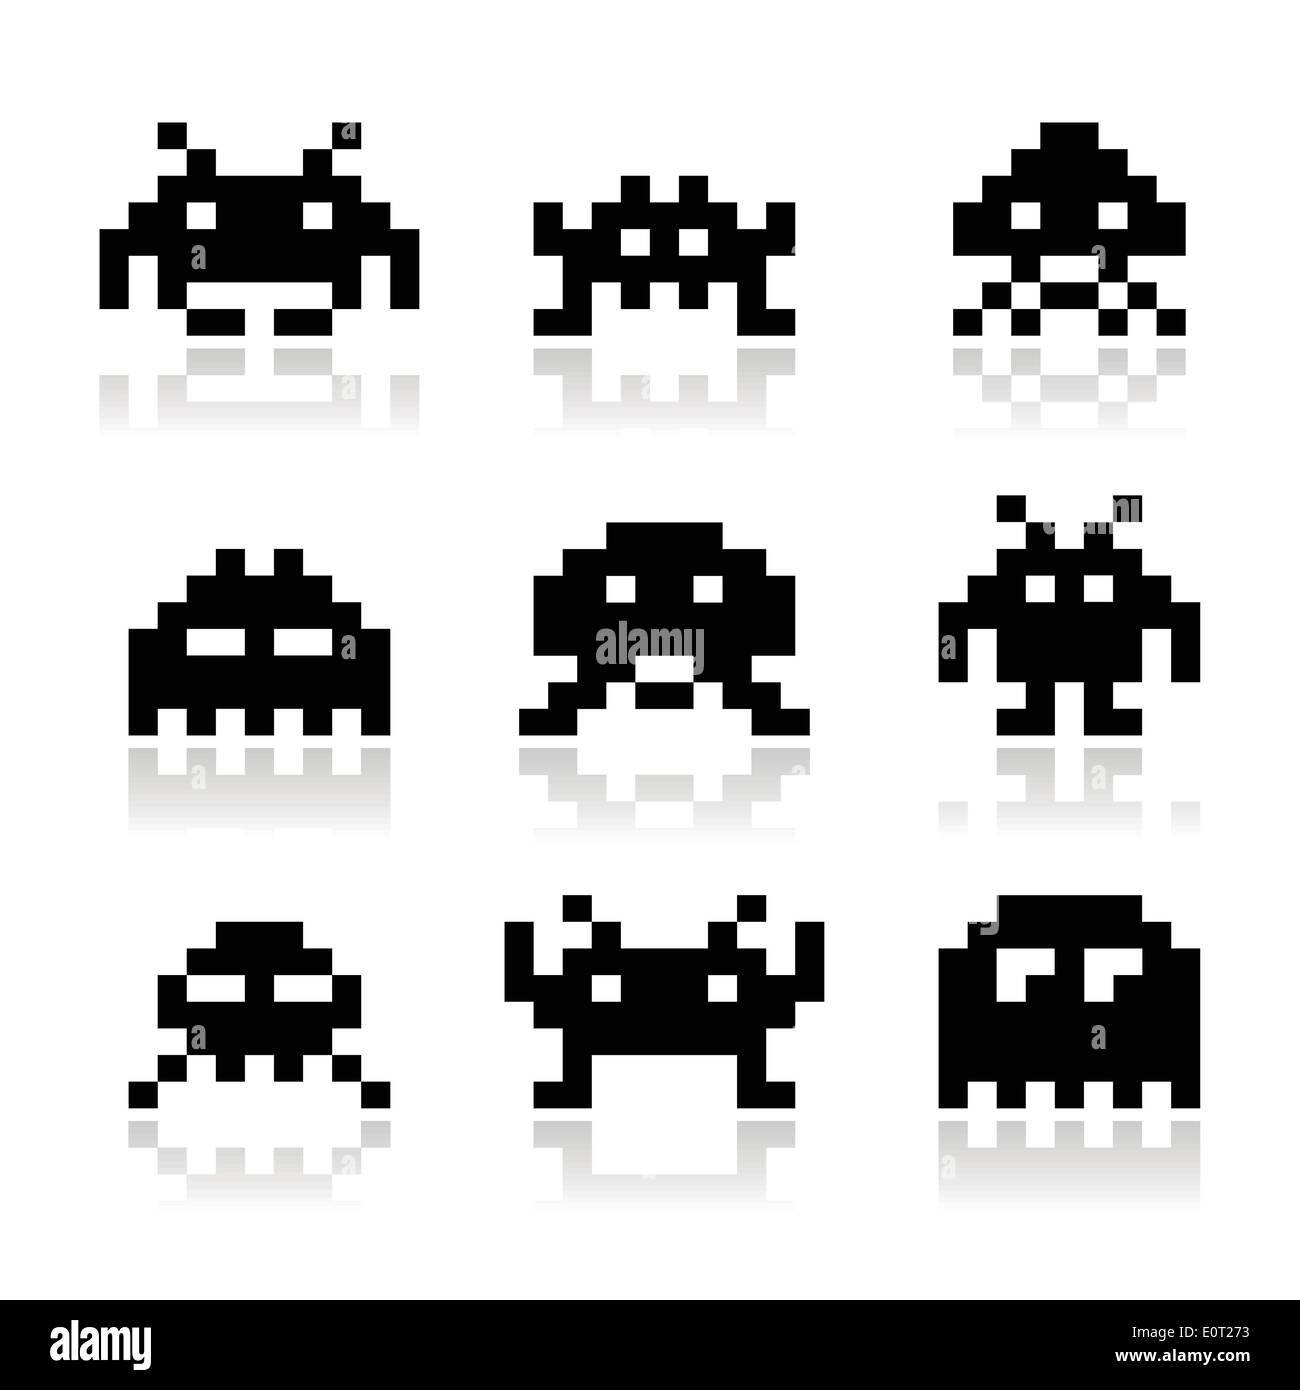 Space invaders Banque d'images noir et blanc - Alamy